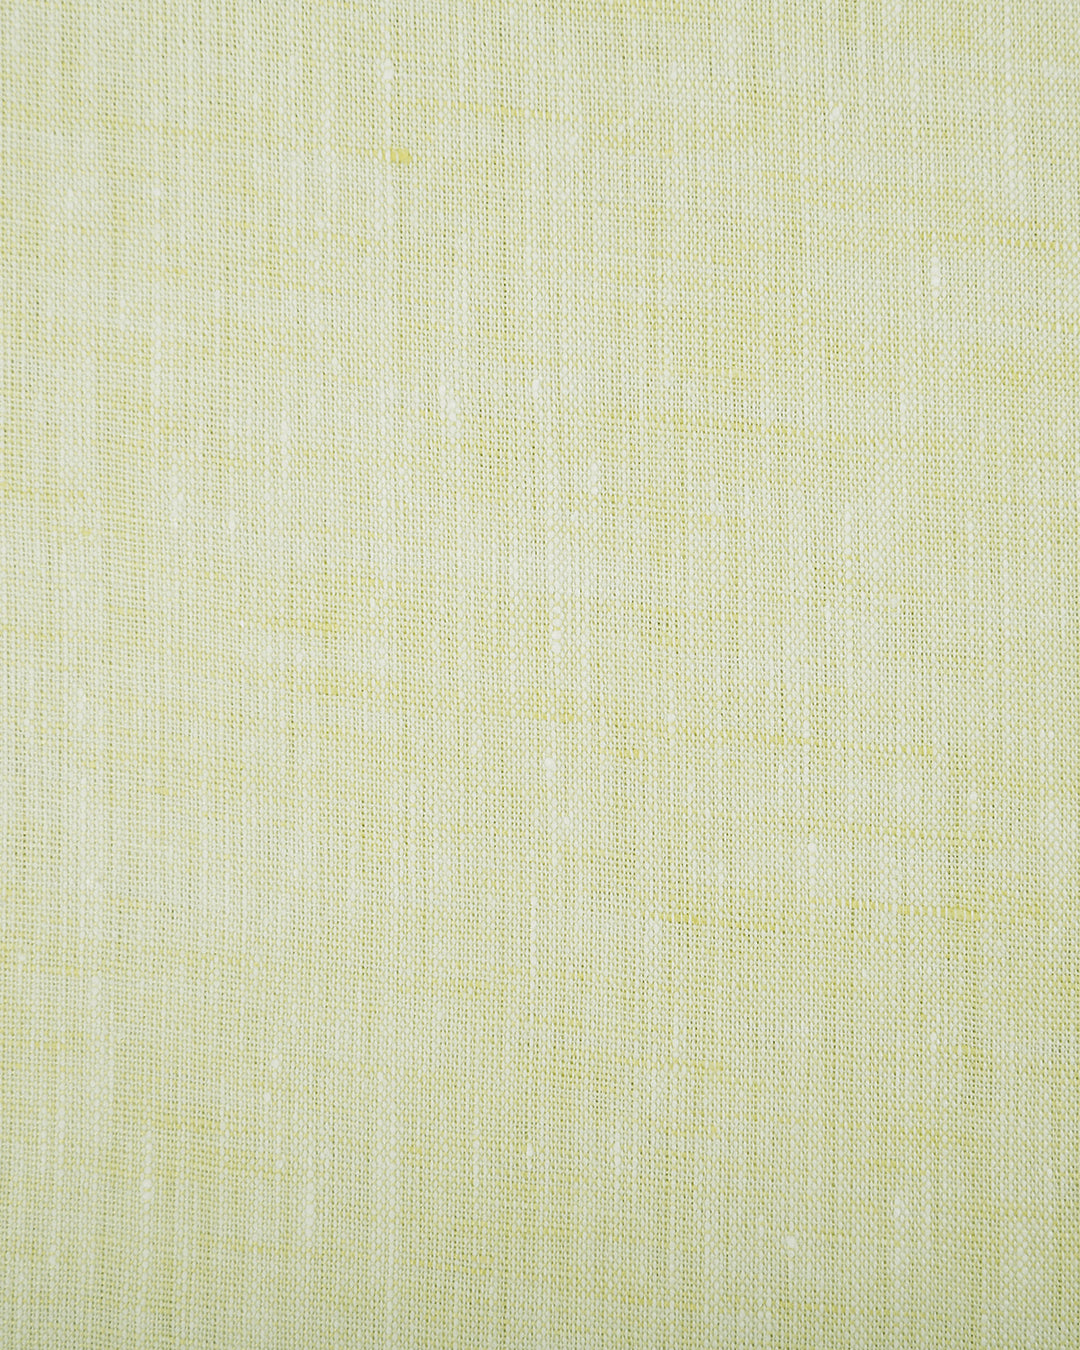 Grandi and Rubinelli Soft Yellow Linen